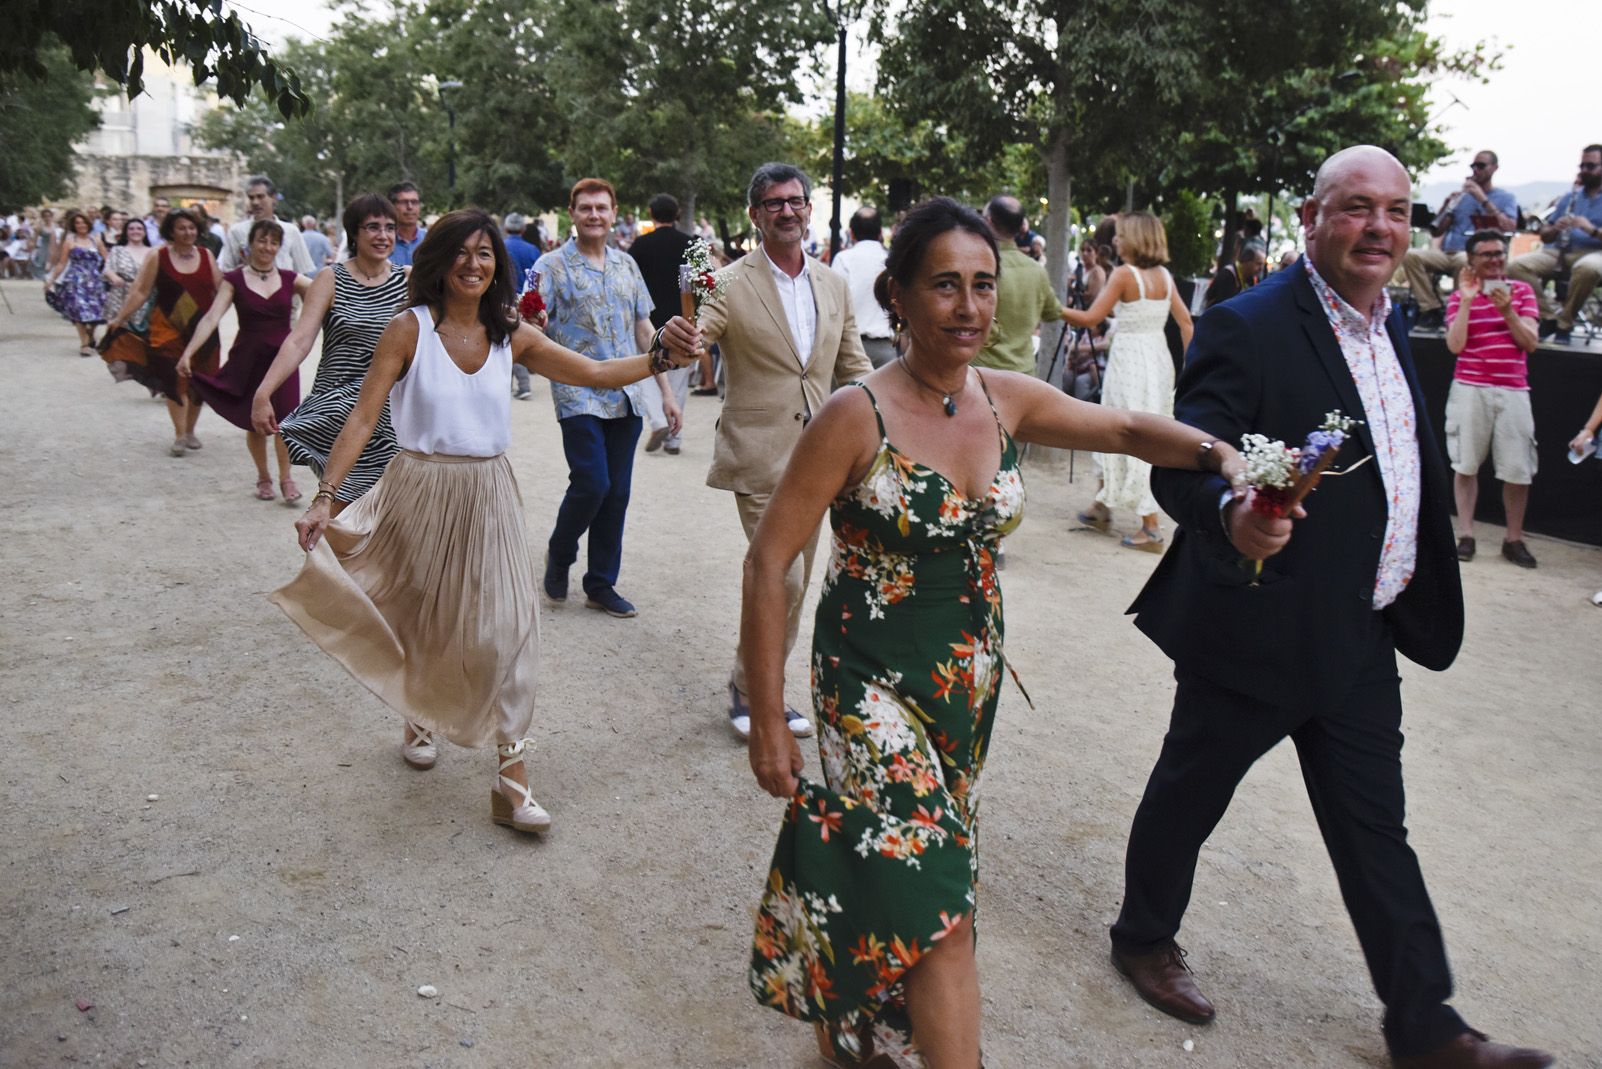 "Paga-li, Joan" El ball del vano i el ram. Foto: Bernat Millet.